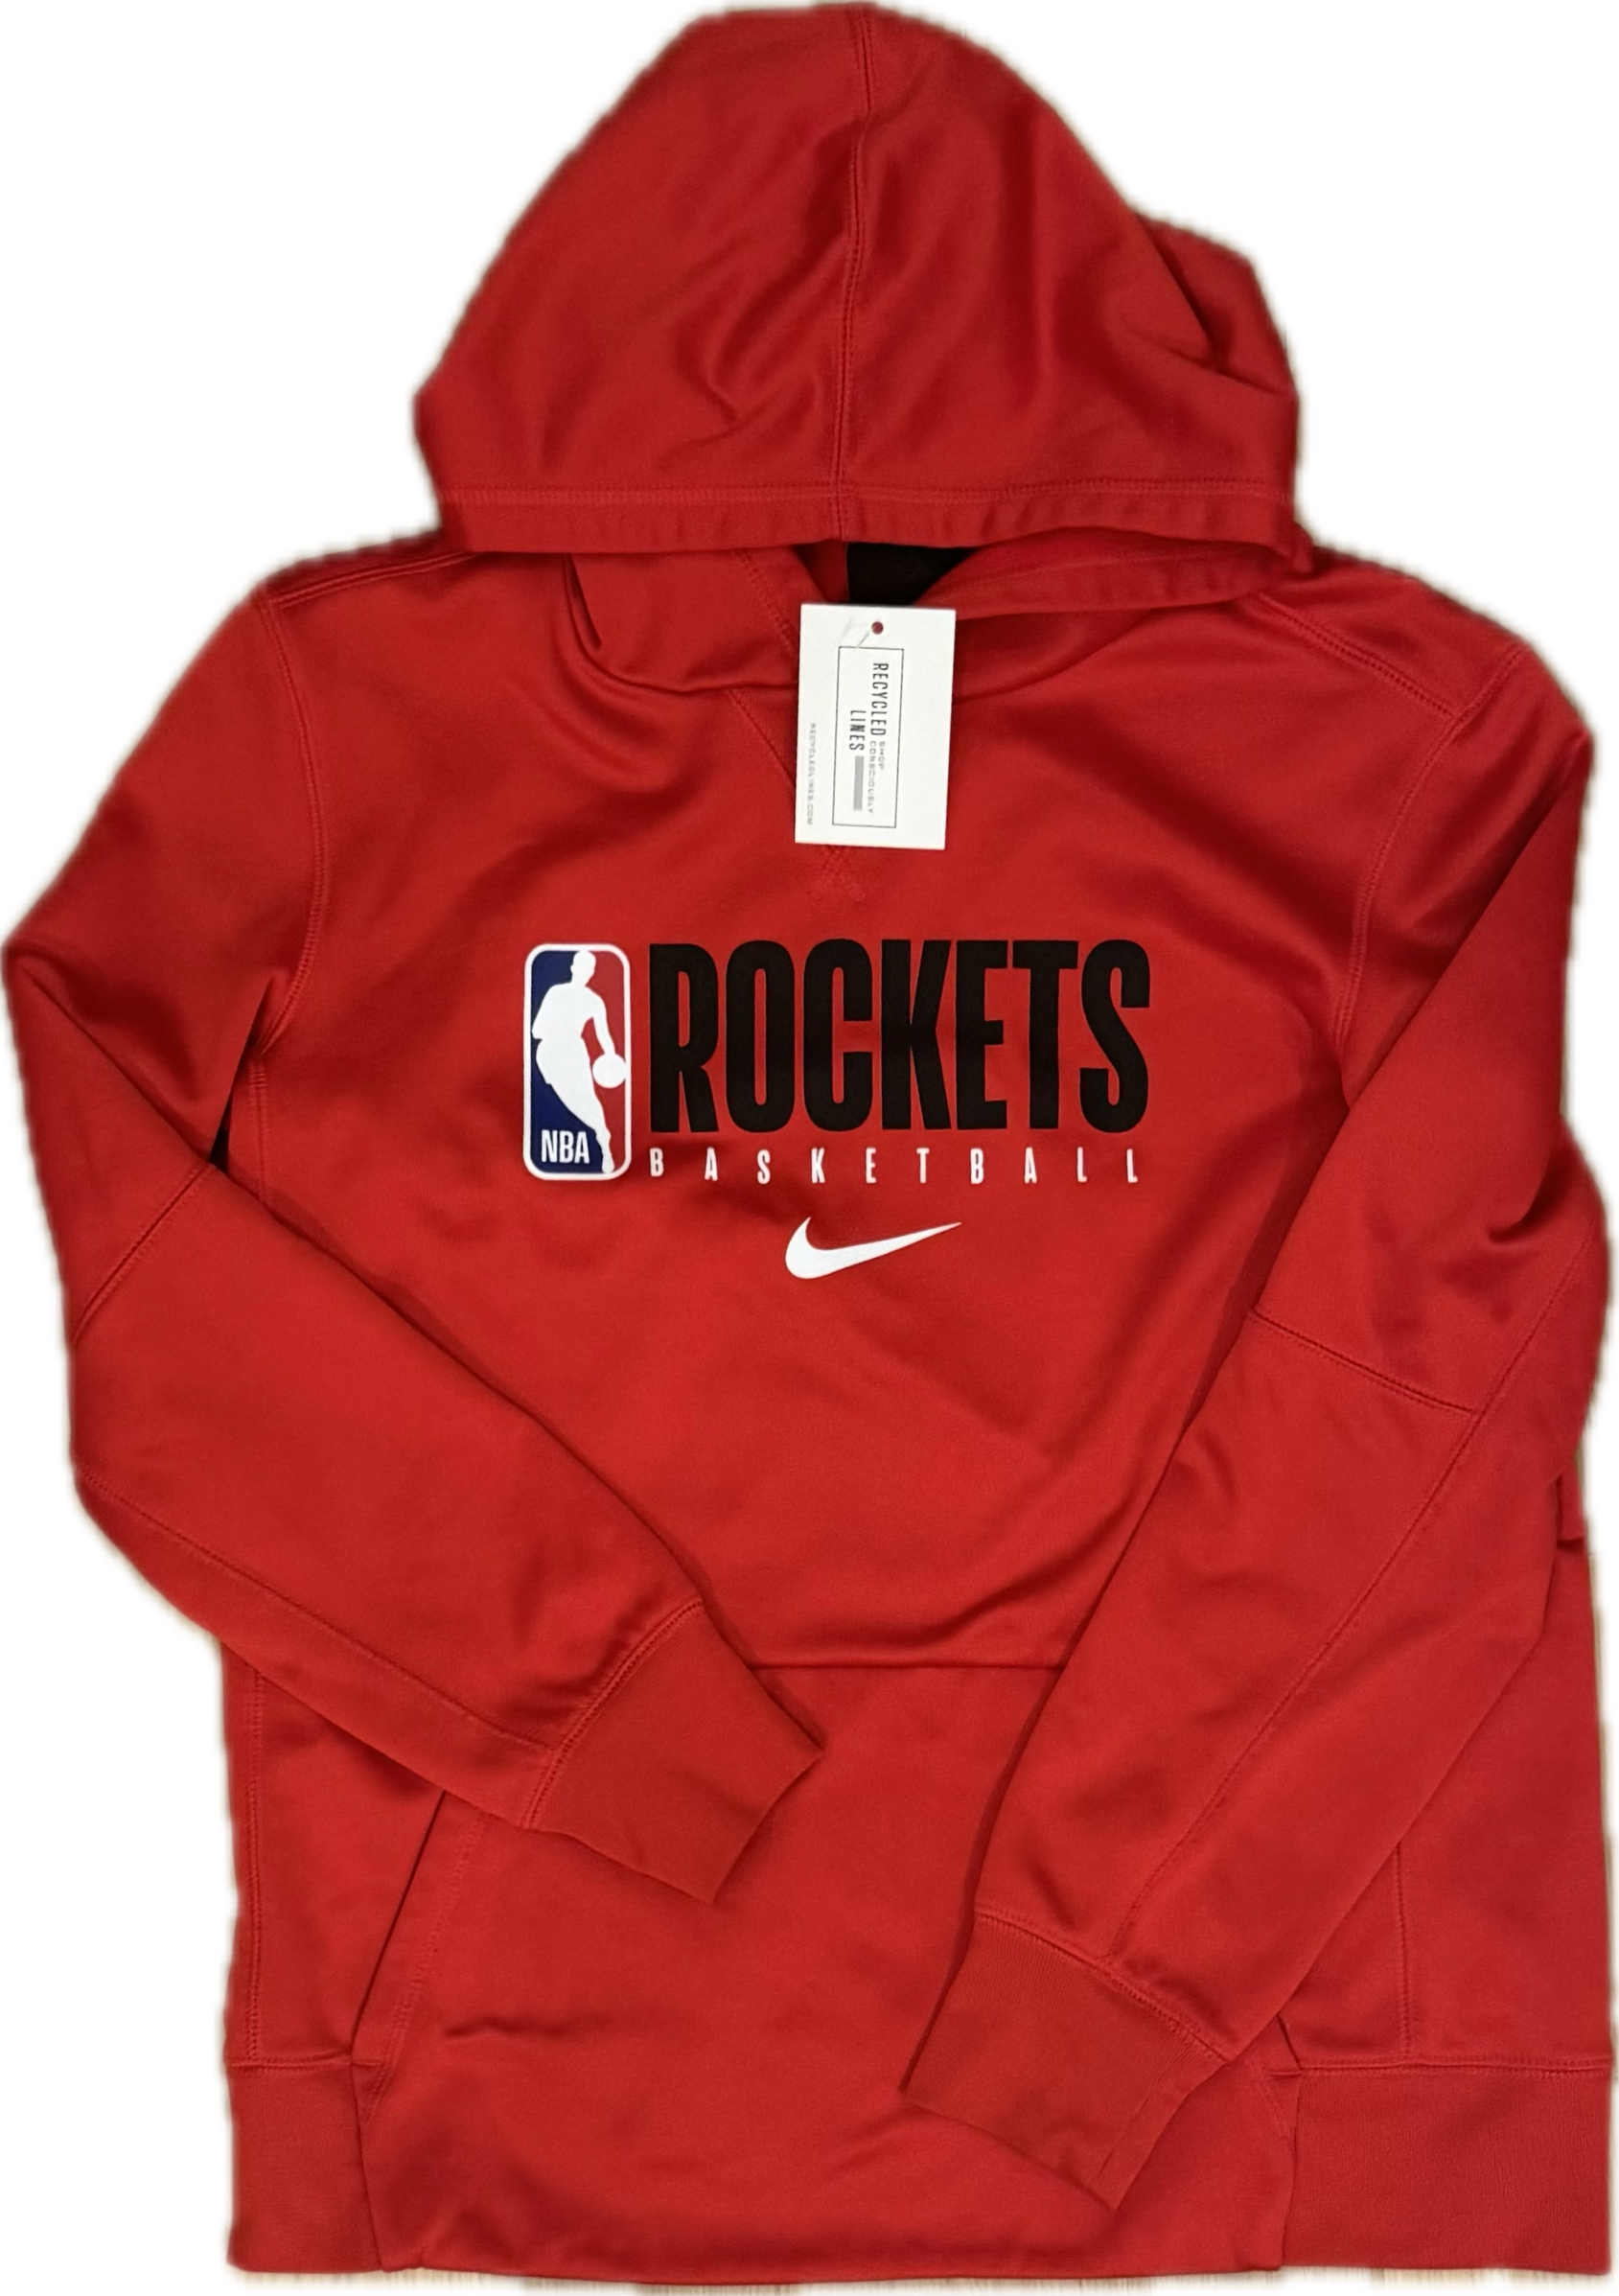 Nike Rockets Hooded Sweatshirt, Red Boys Size L